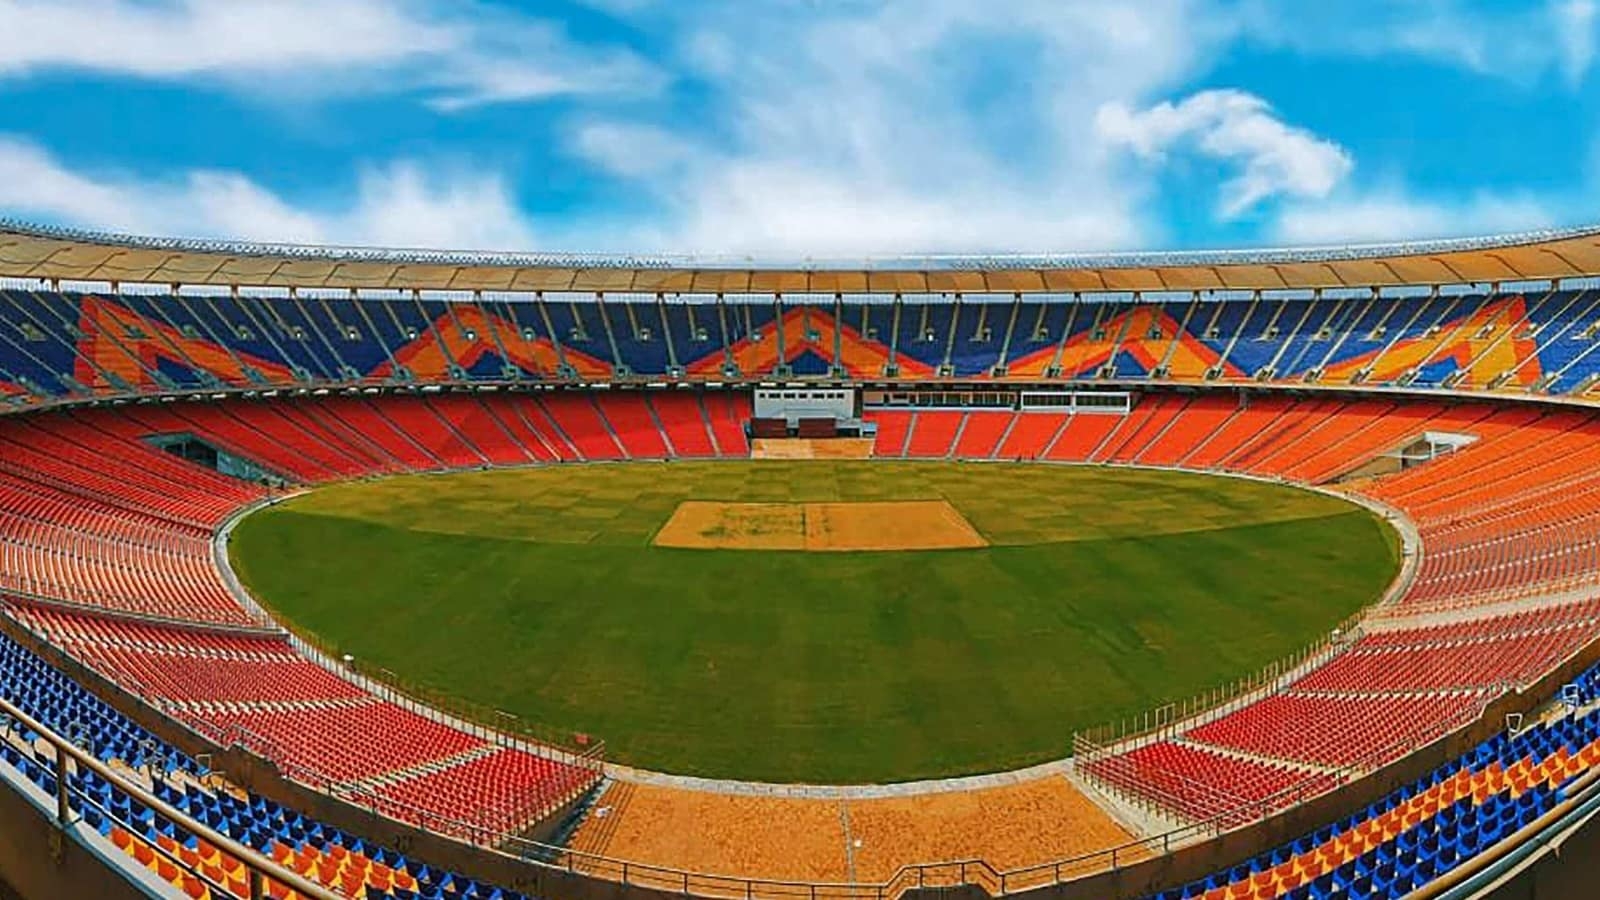 Estadio de críquet, India